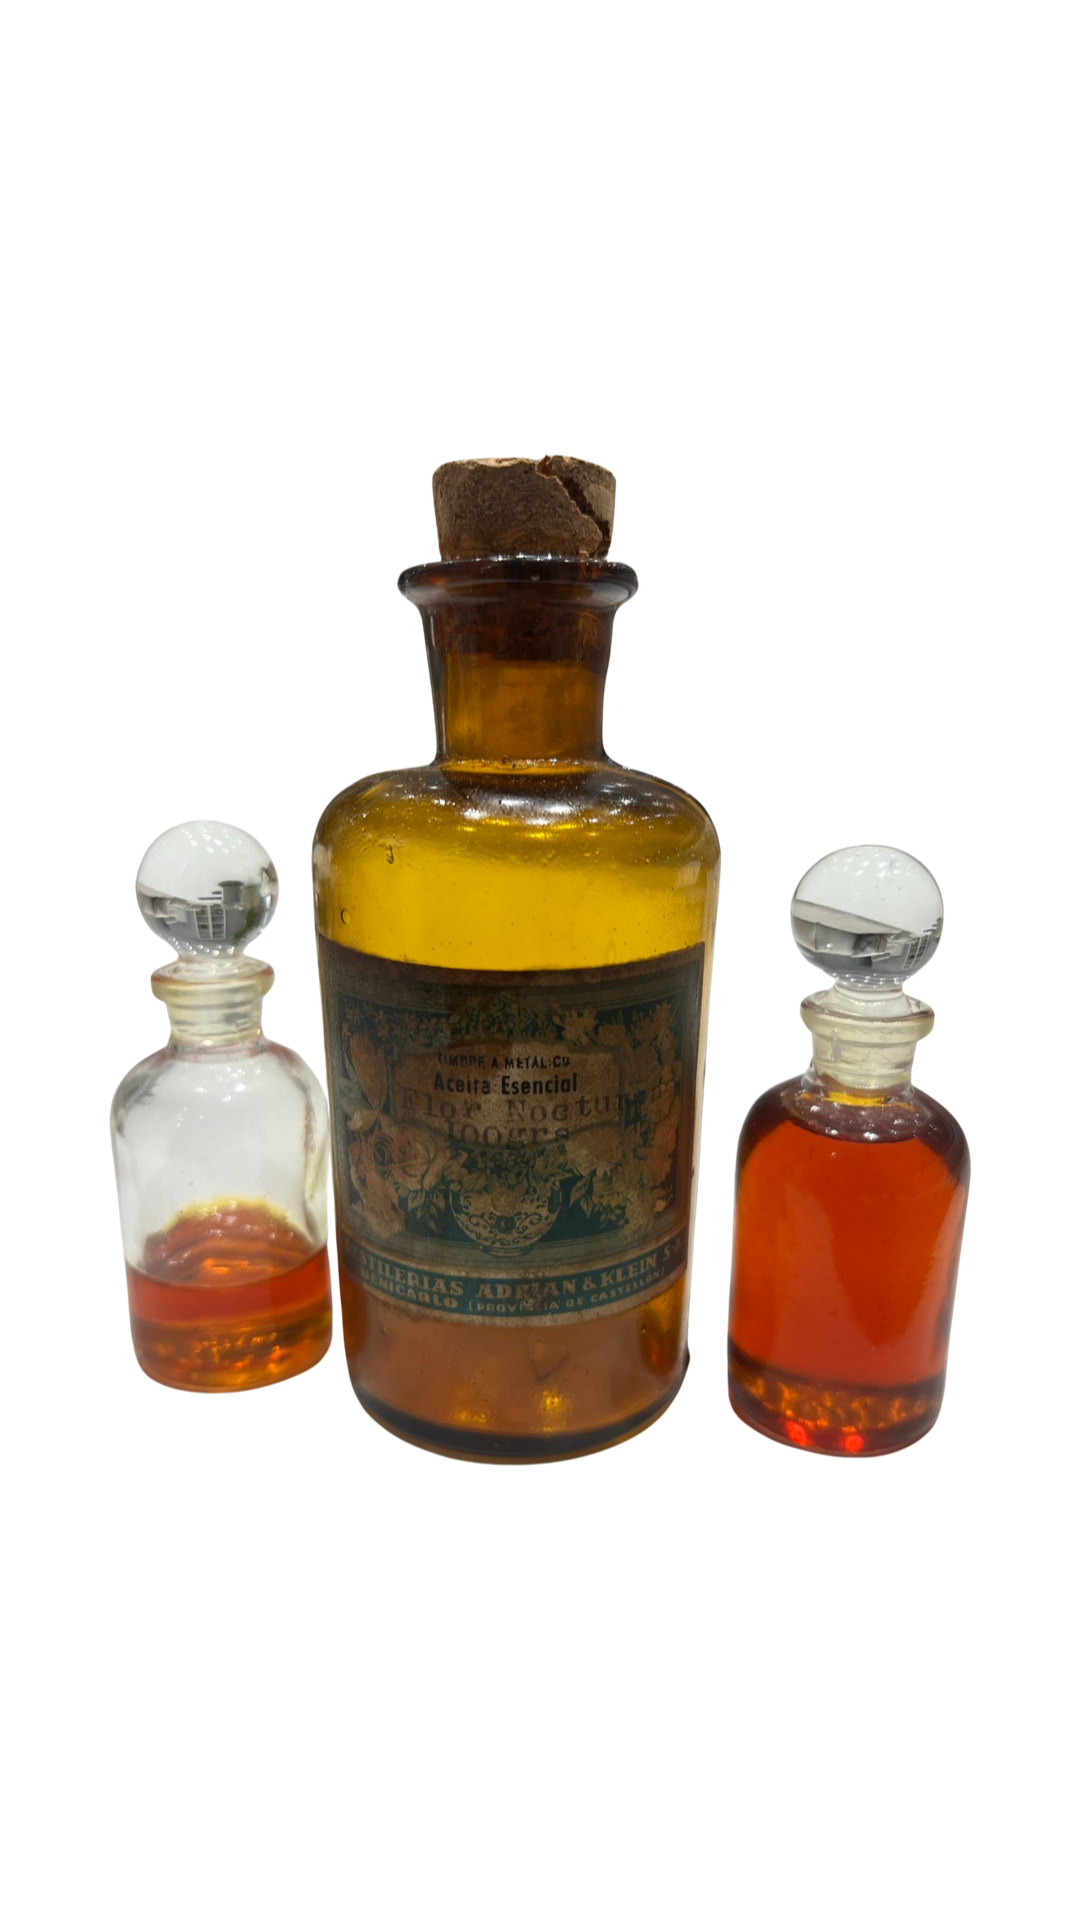 Vintage Cestrum Nocturnum (Nachtblühender Jasmin) ätherisches Öl (1930er Jahre)